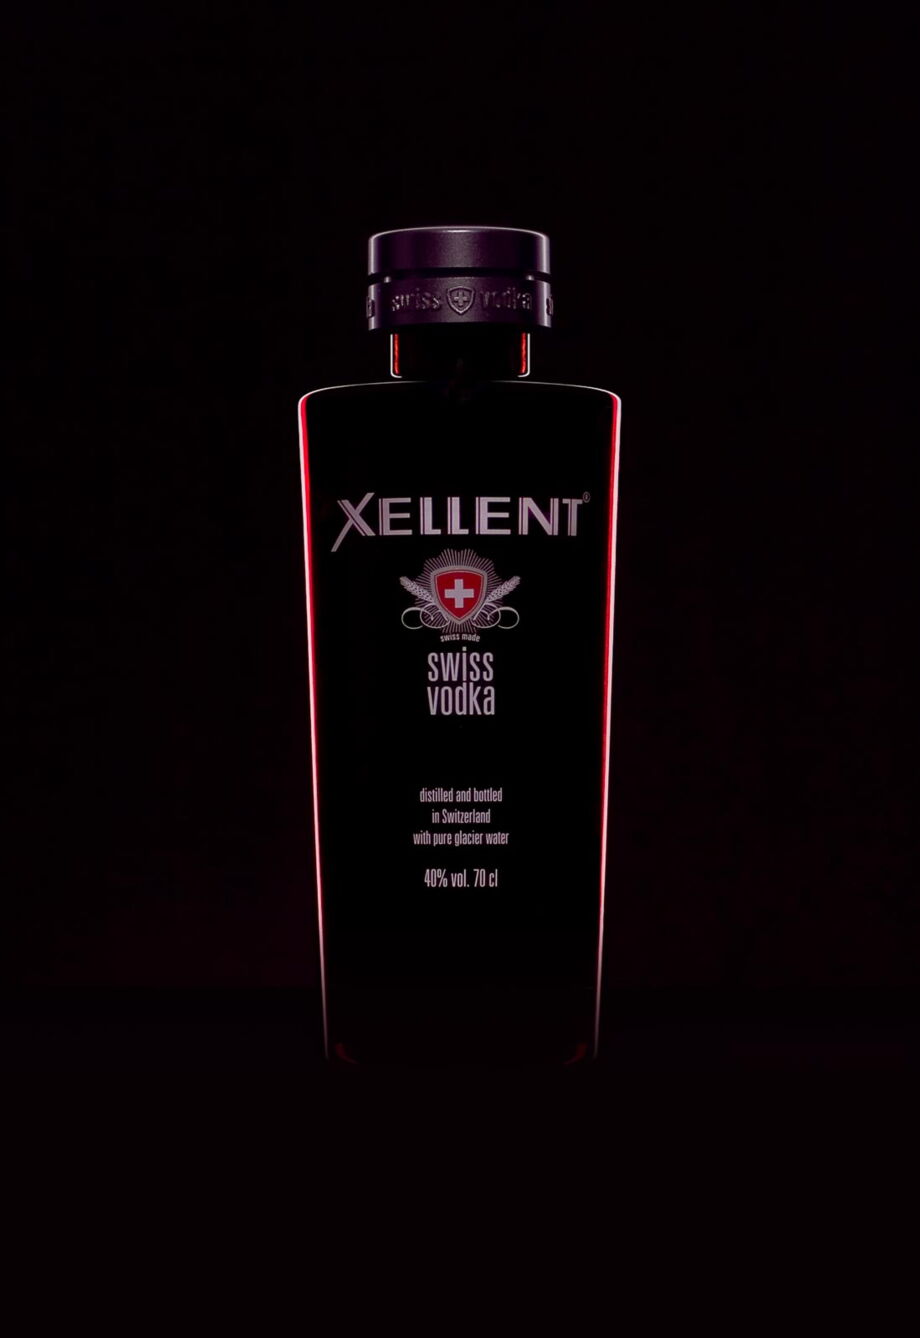 Werbefotografie einer roten Wodkaflasche mit grauem Verschluss auf schwarzem HIntergrund